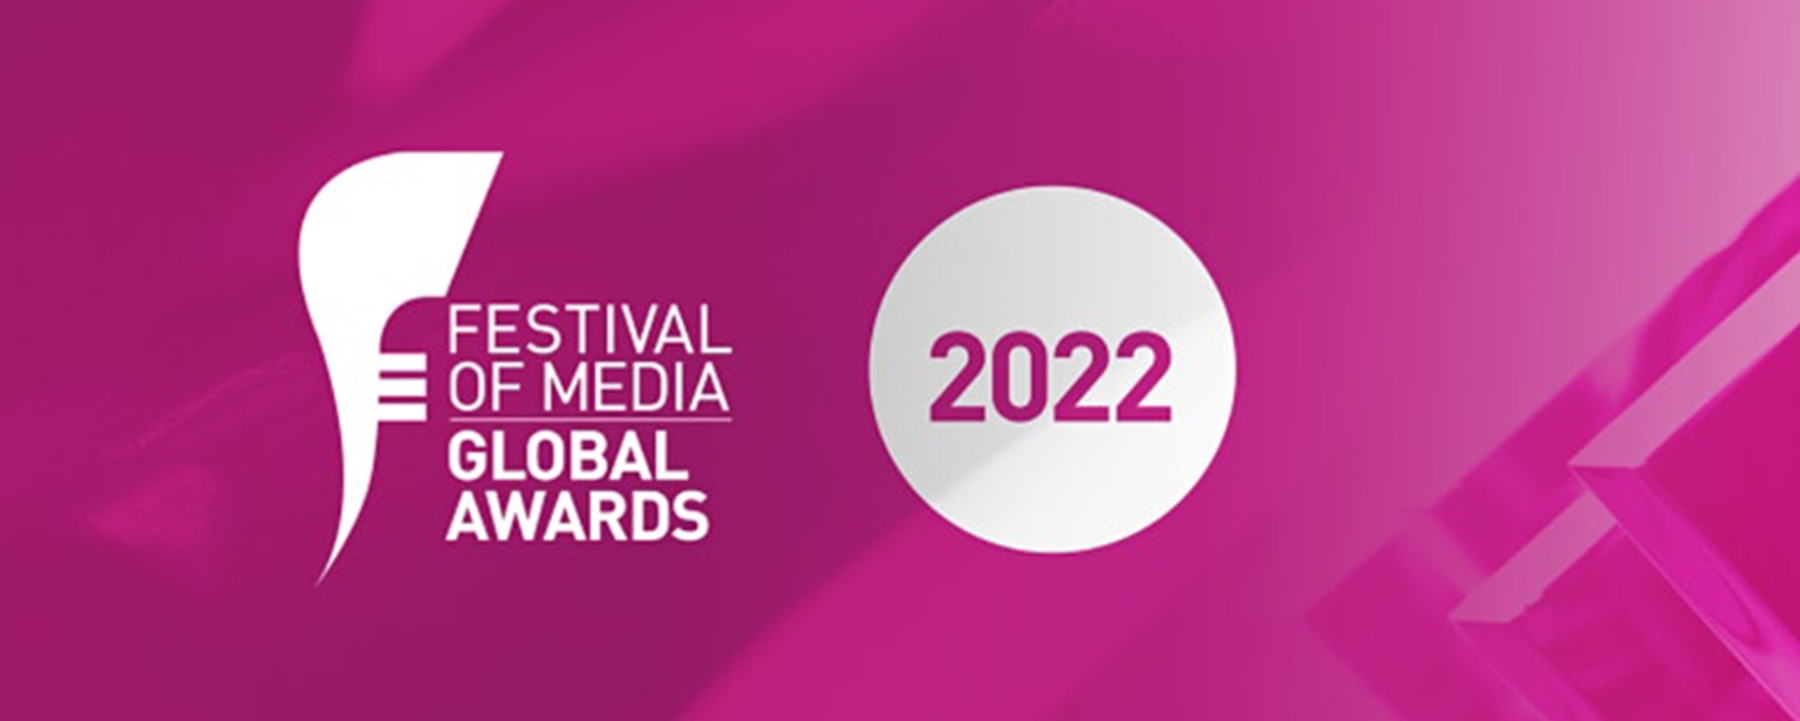 FESTIVAL OF MEDIA GLOBAL AWARDS 2022